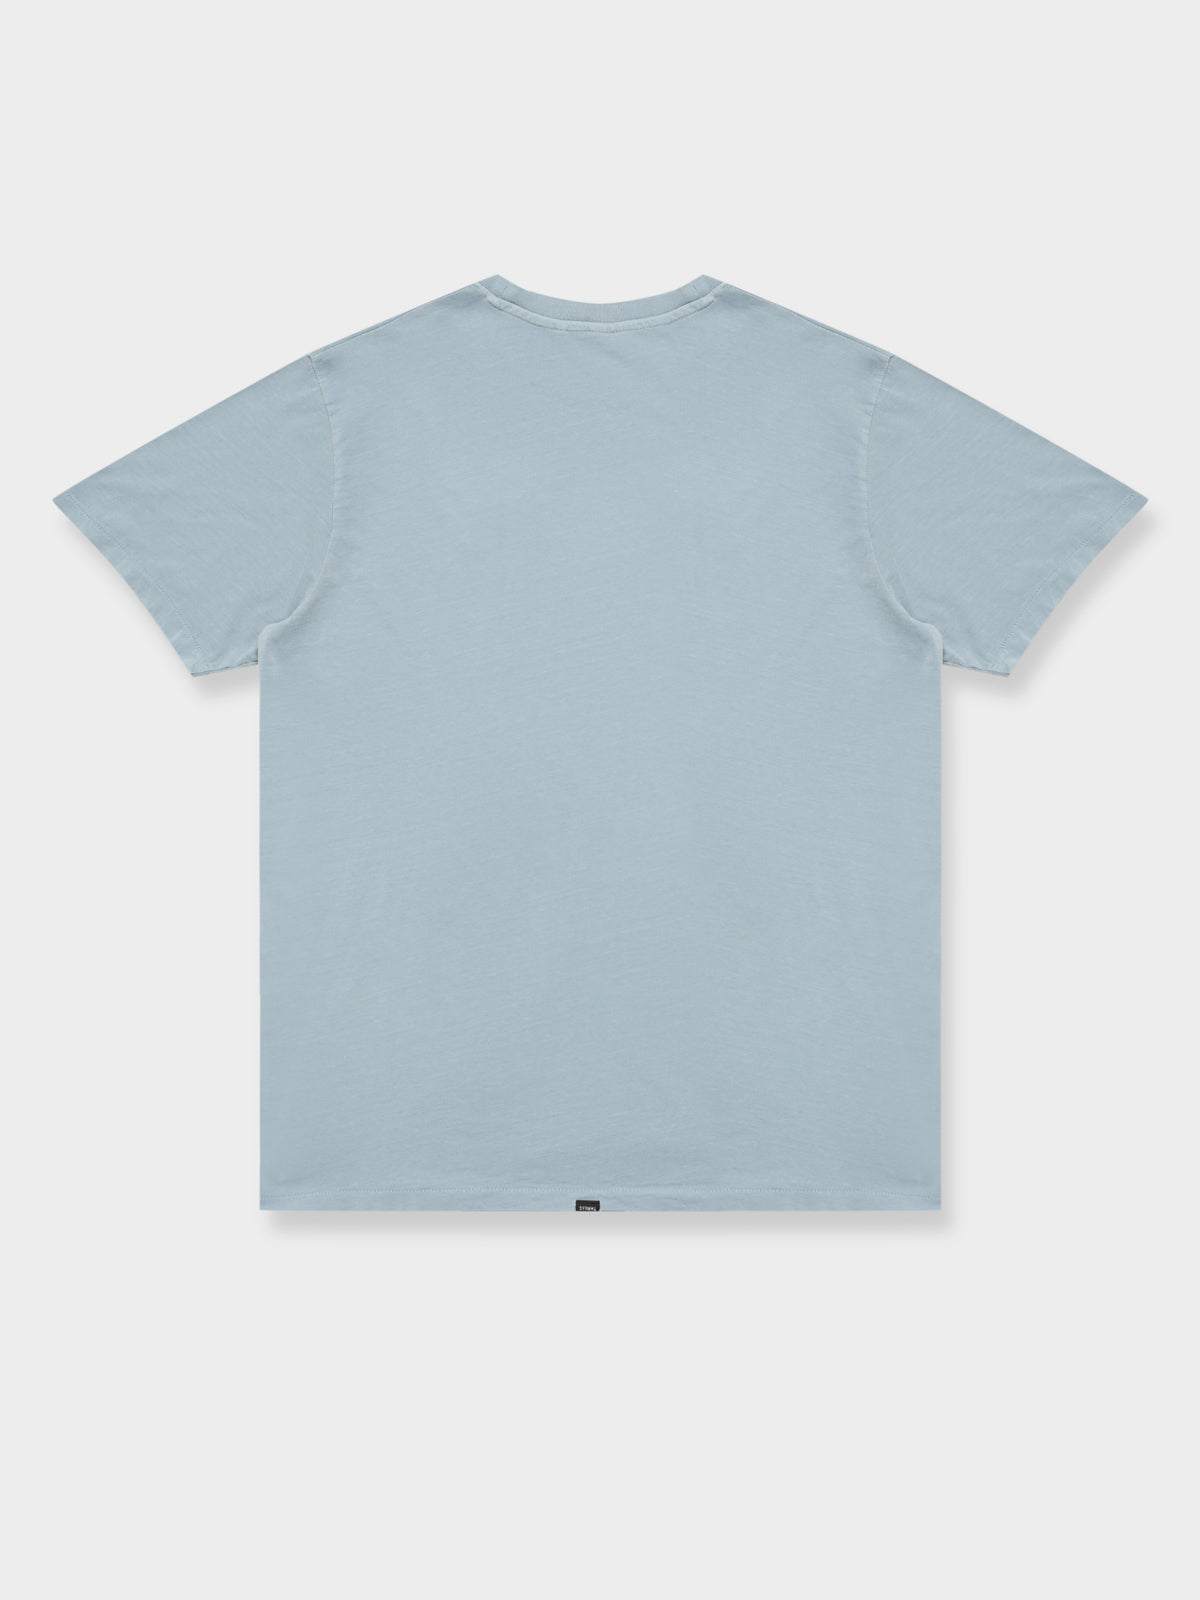 Minimal Thrills Merch Fit T-Shirt in Vintage Steel Blue